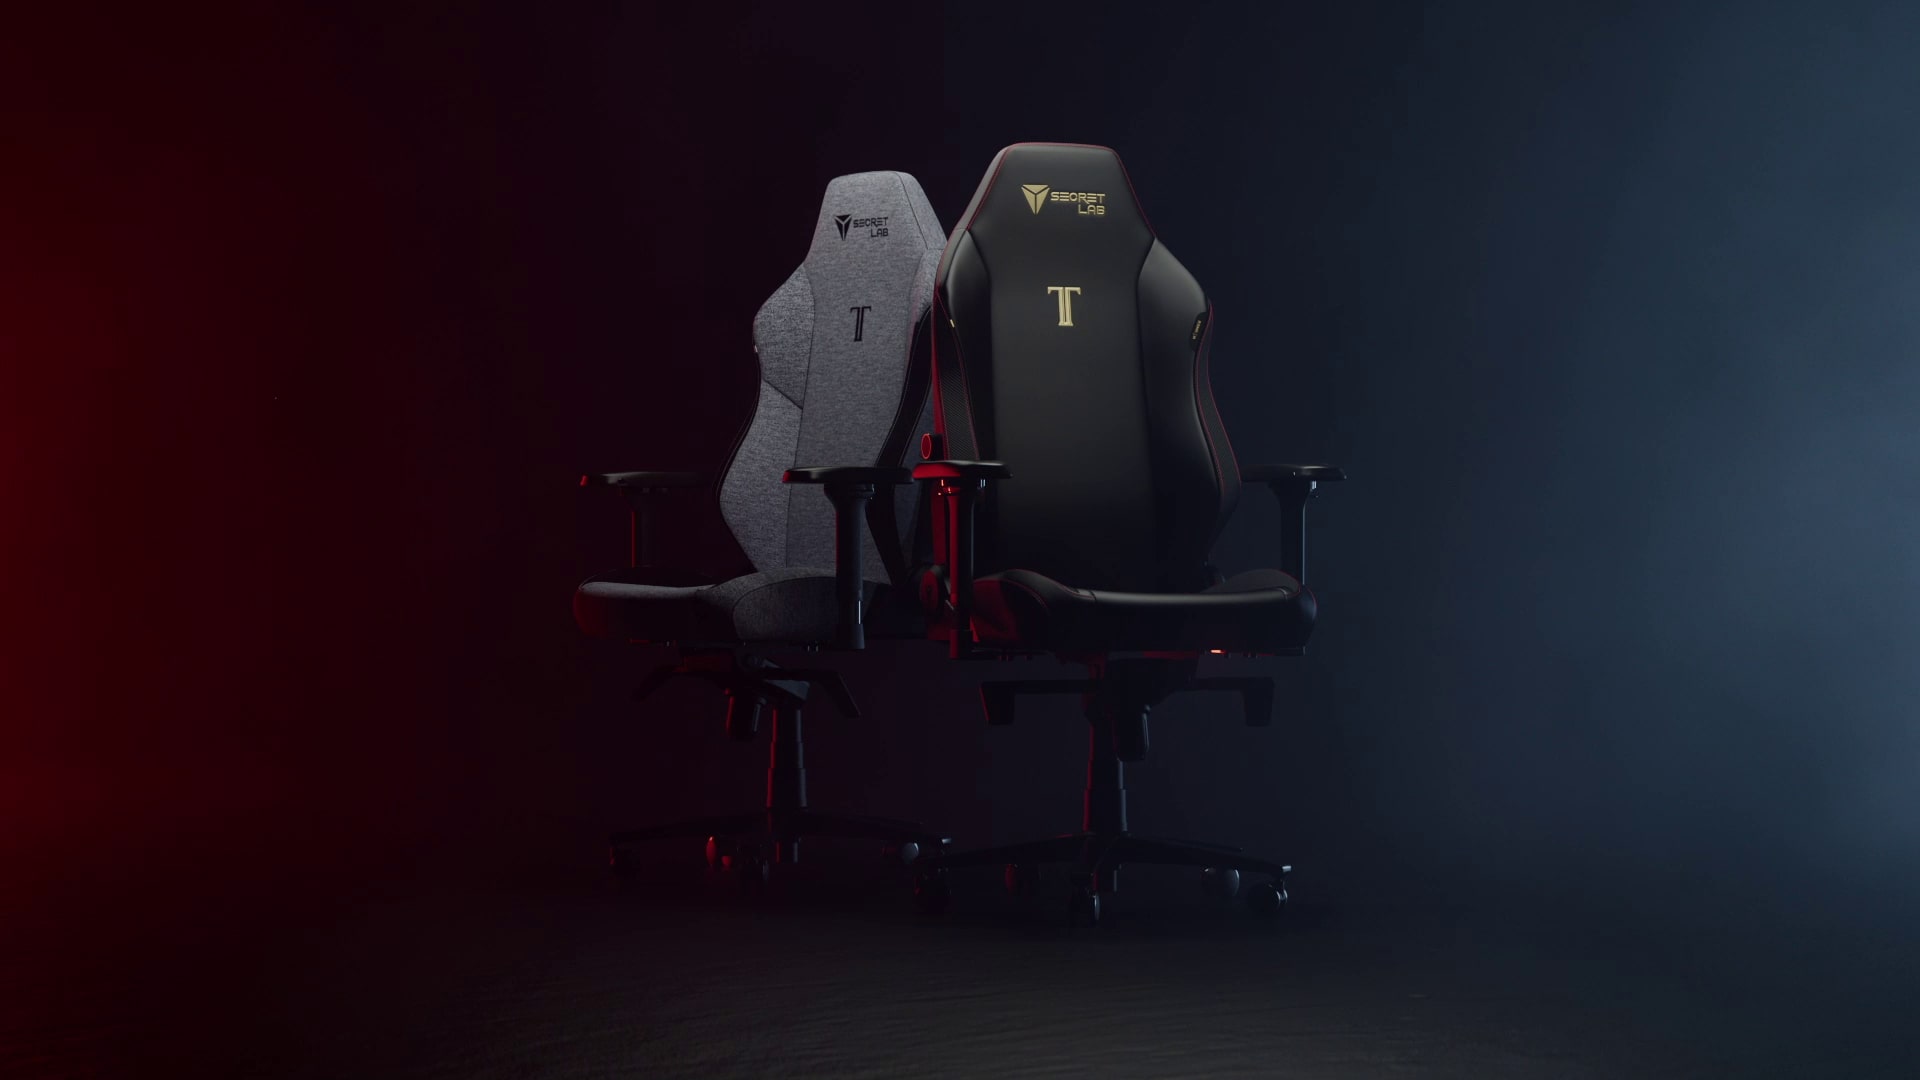 Gaming Chair Features, Secretlab TITAN Evo